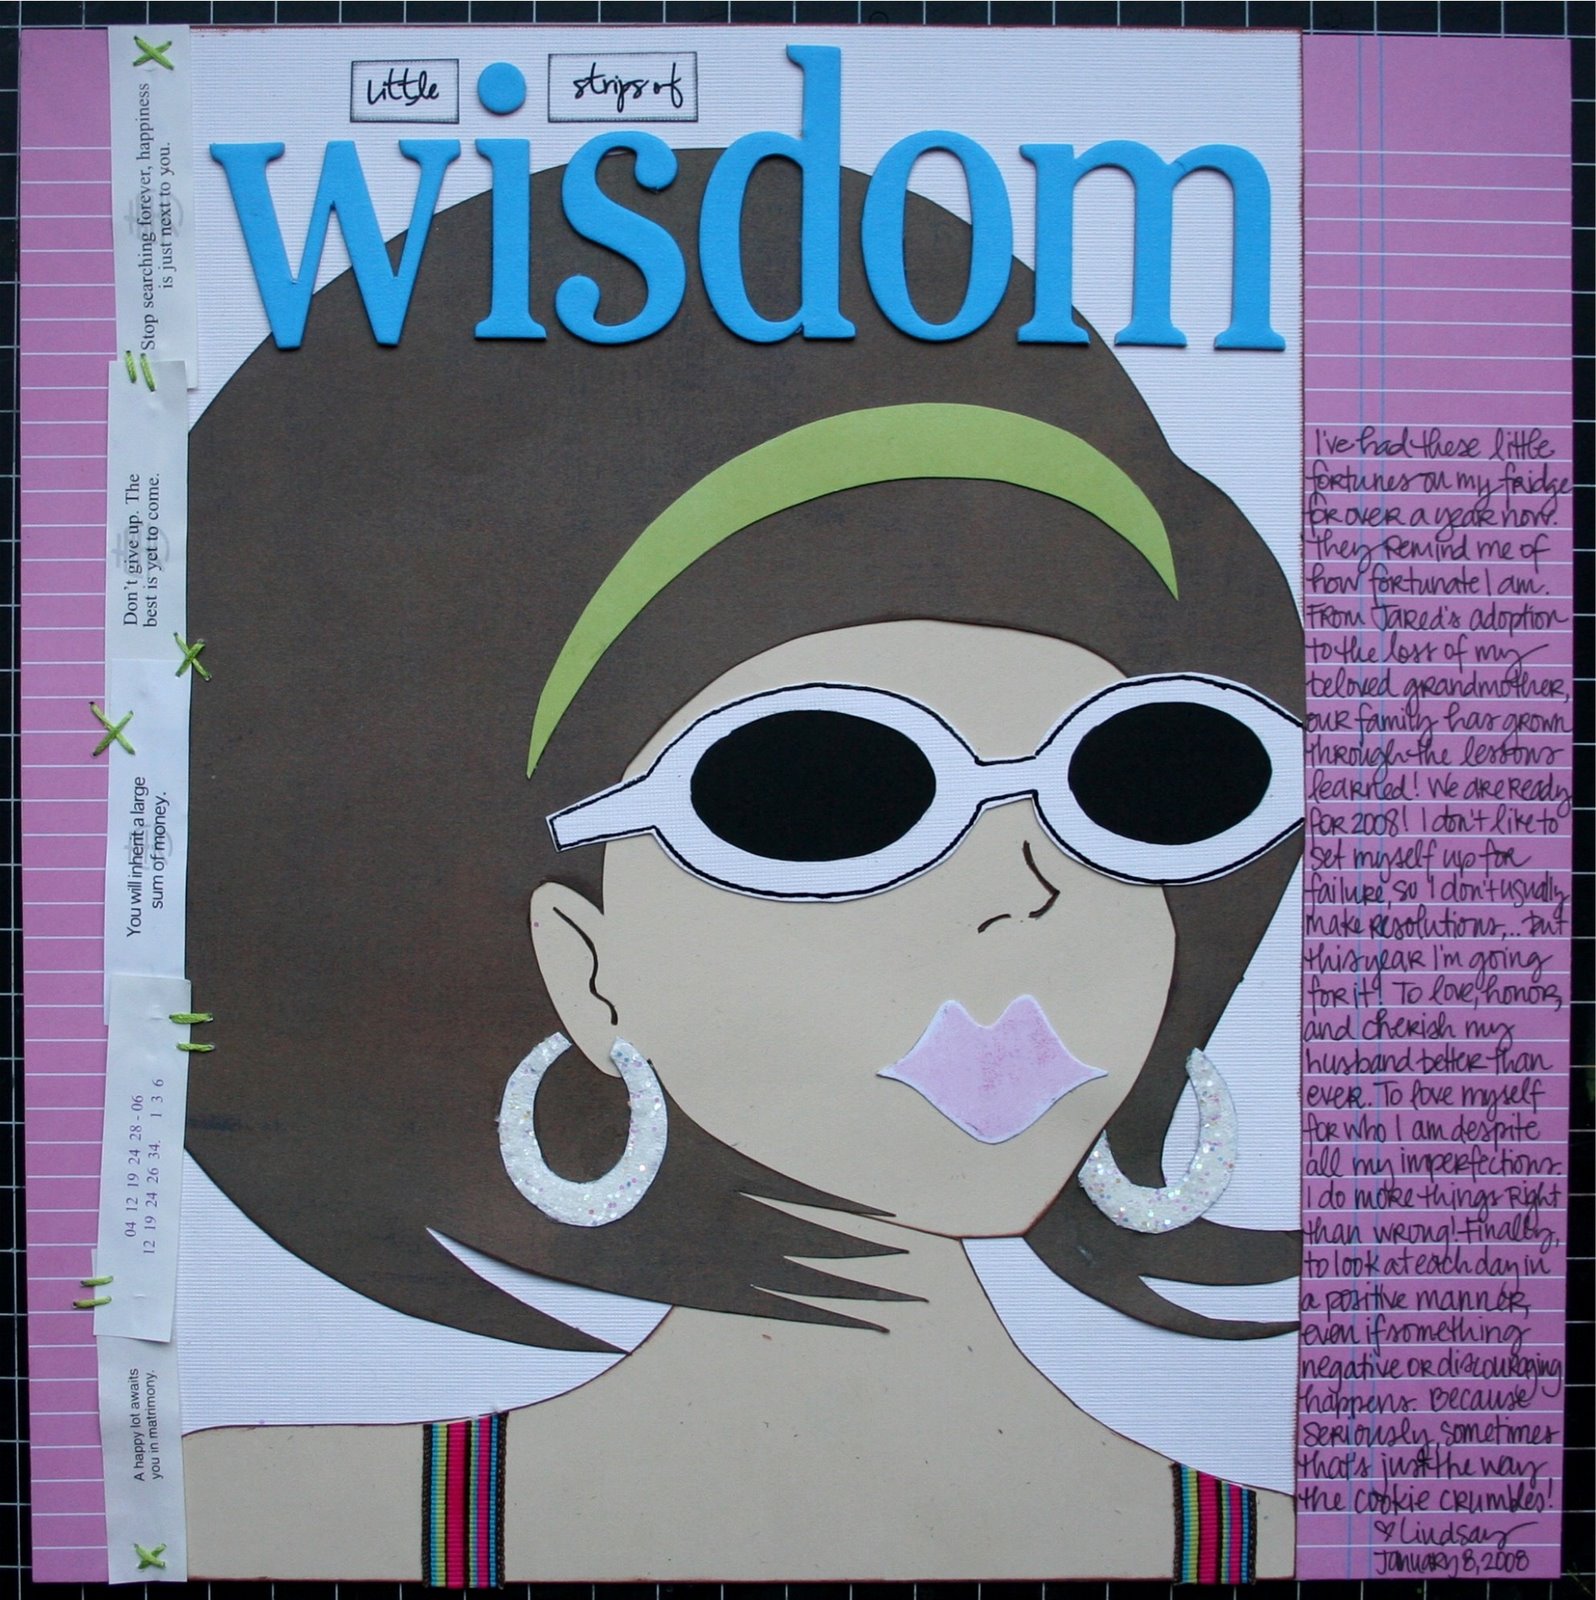 [little+strips+of+wisdom+by+lindsay+kloehr.JPG]